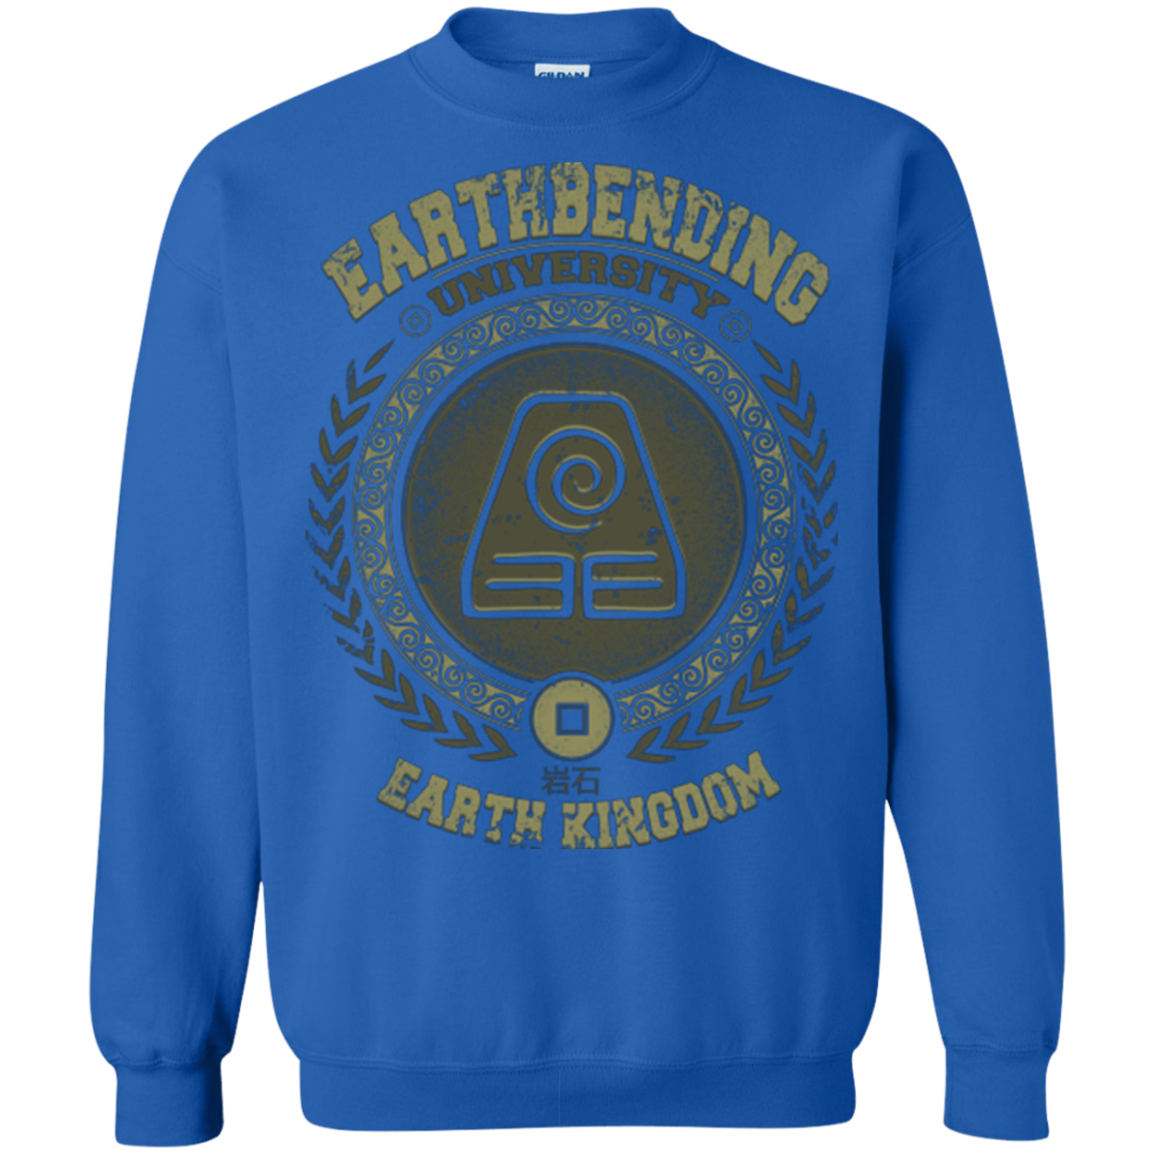 Earthbending university Crewneck Sweatshirt